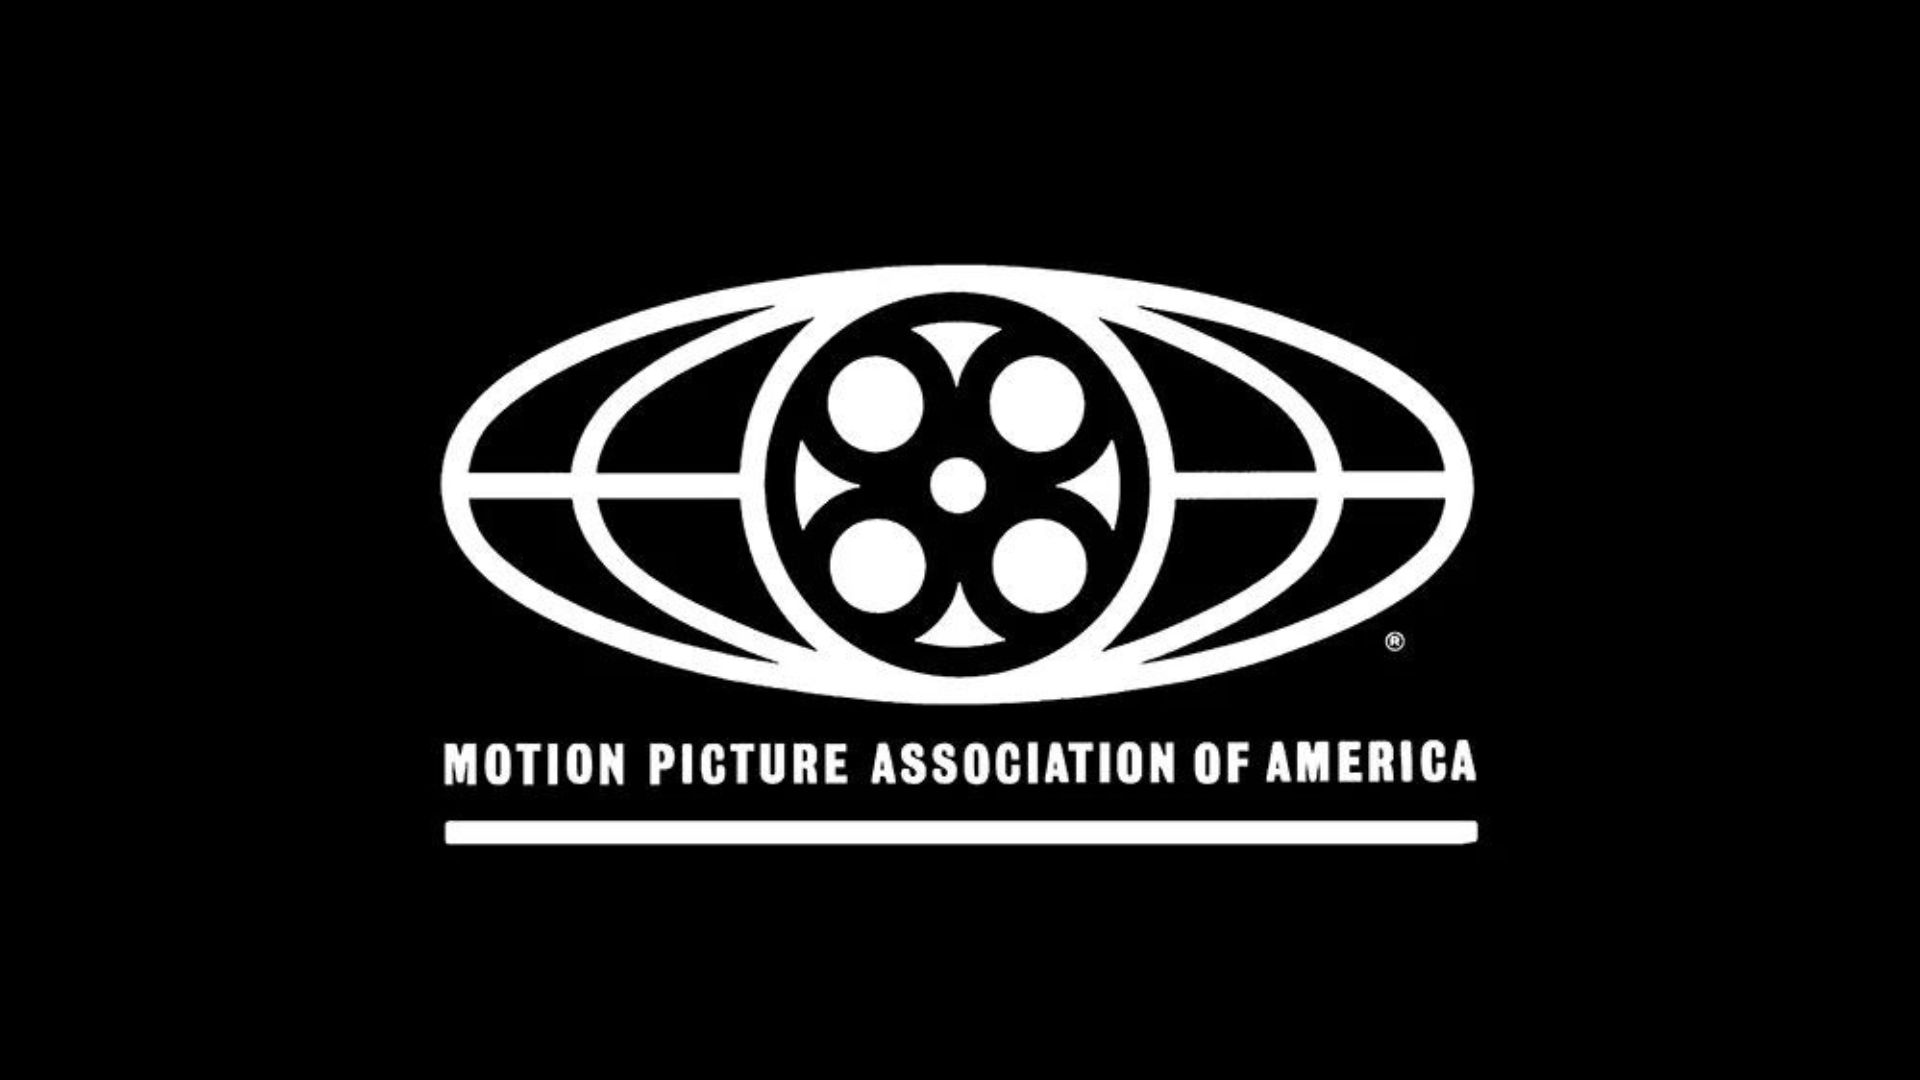 Hệ Thống Phân Loại Phim Của MPAA